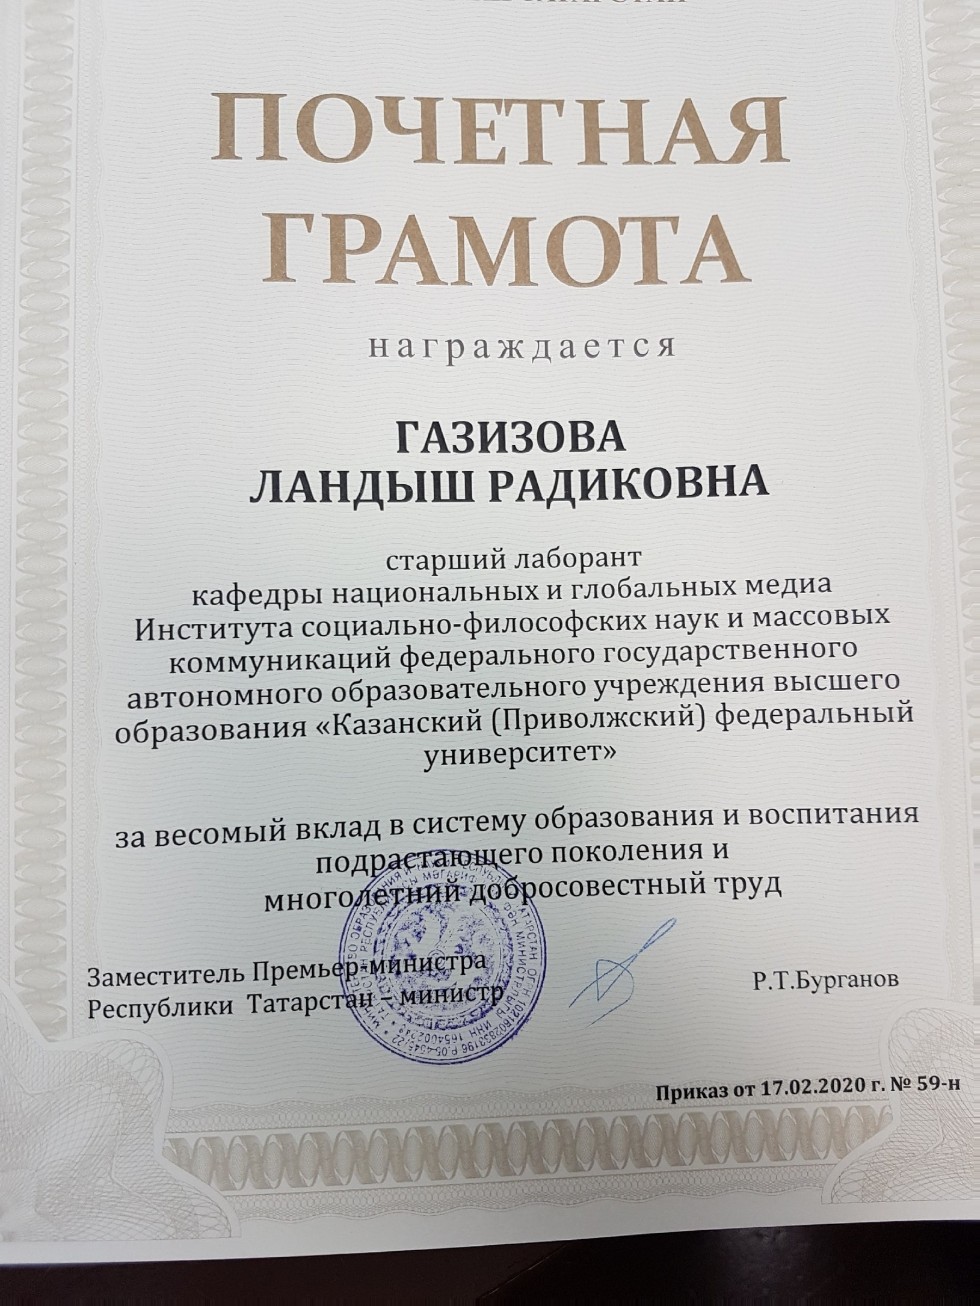 Грамотой Министерства образования и науки РТ награждена Ландыш Газизова